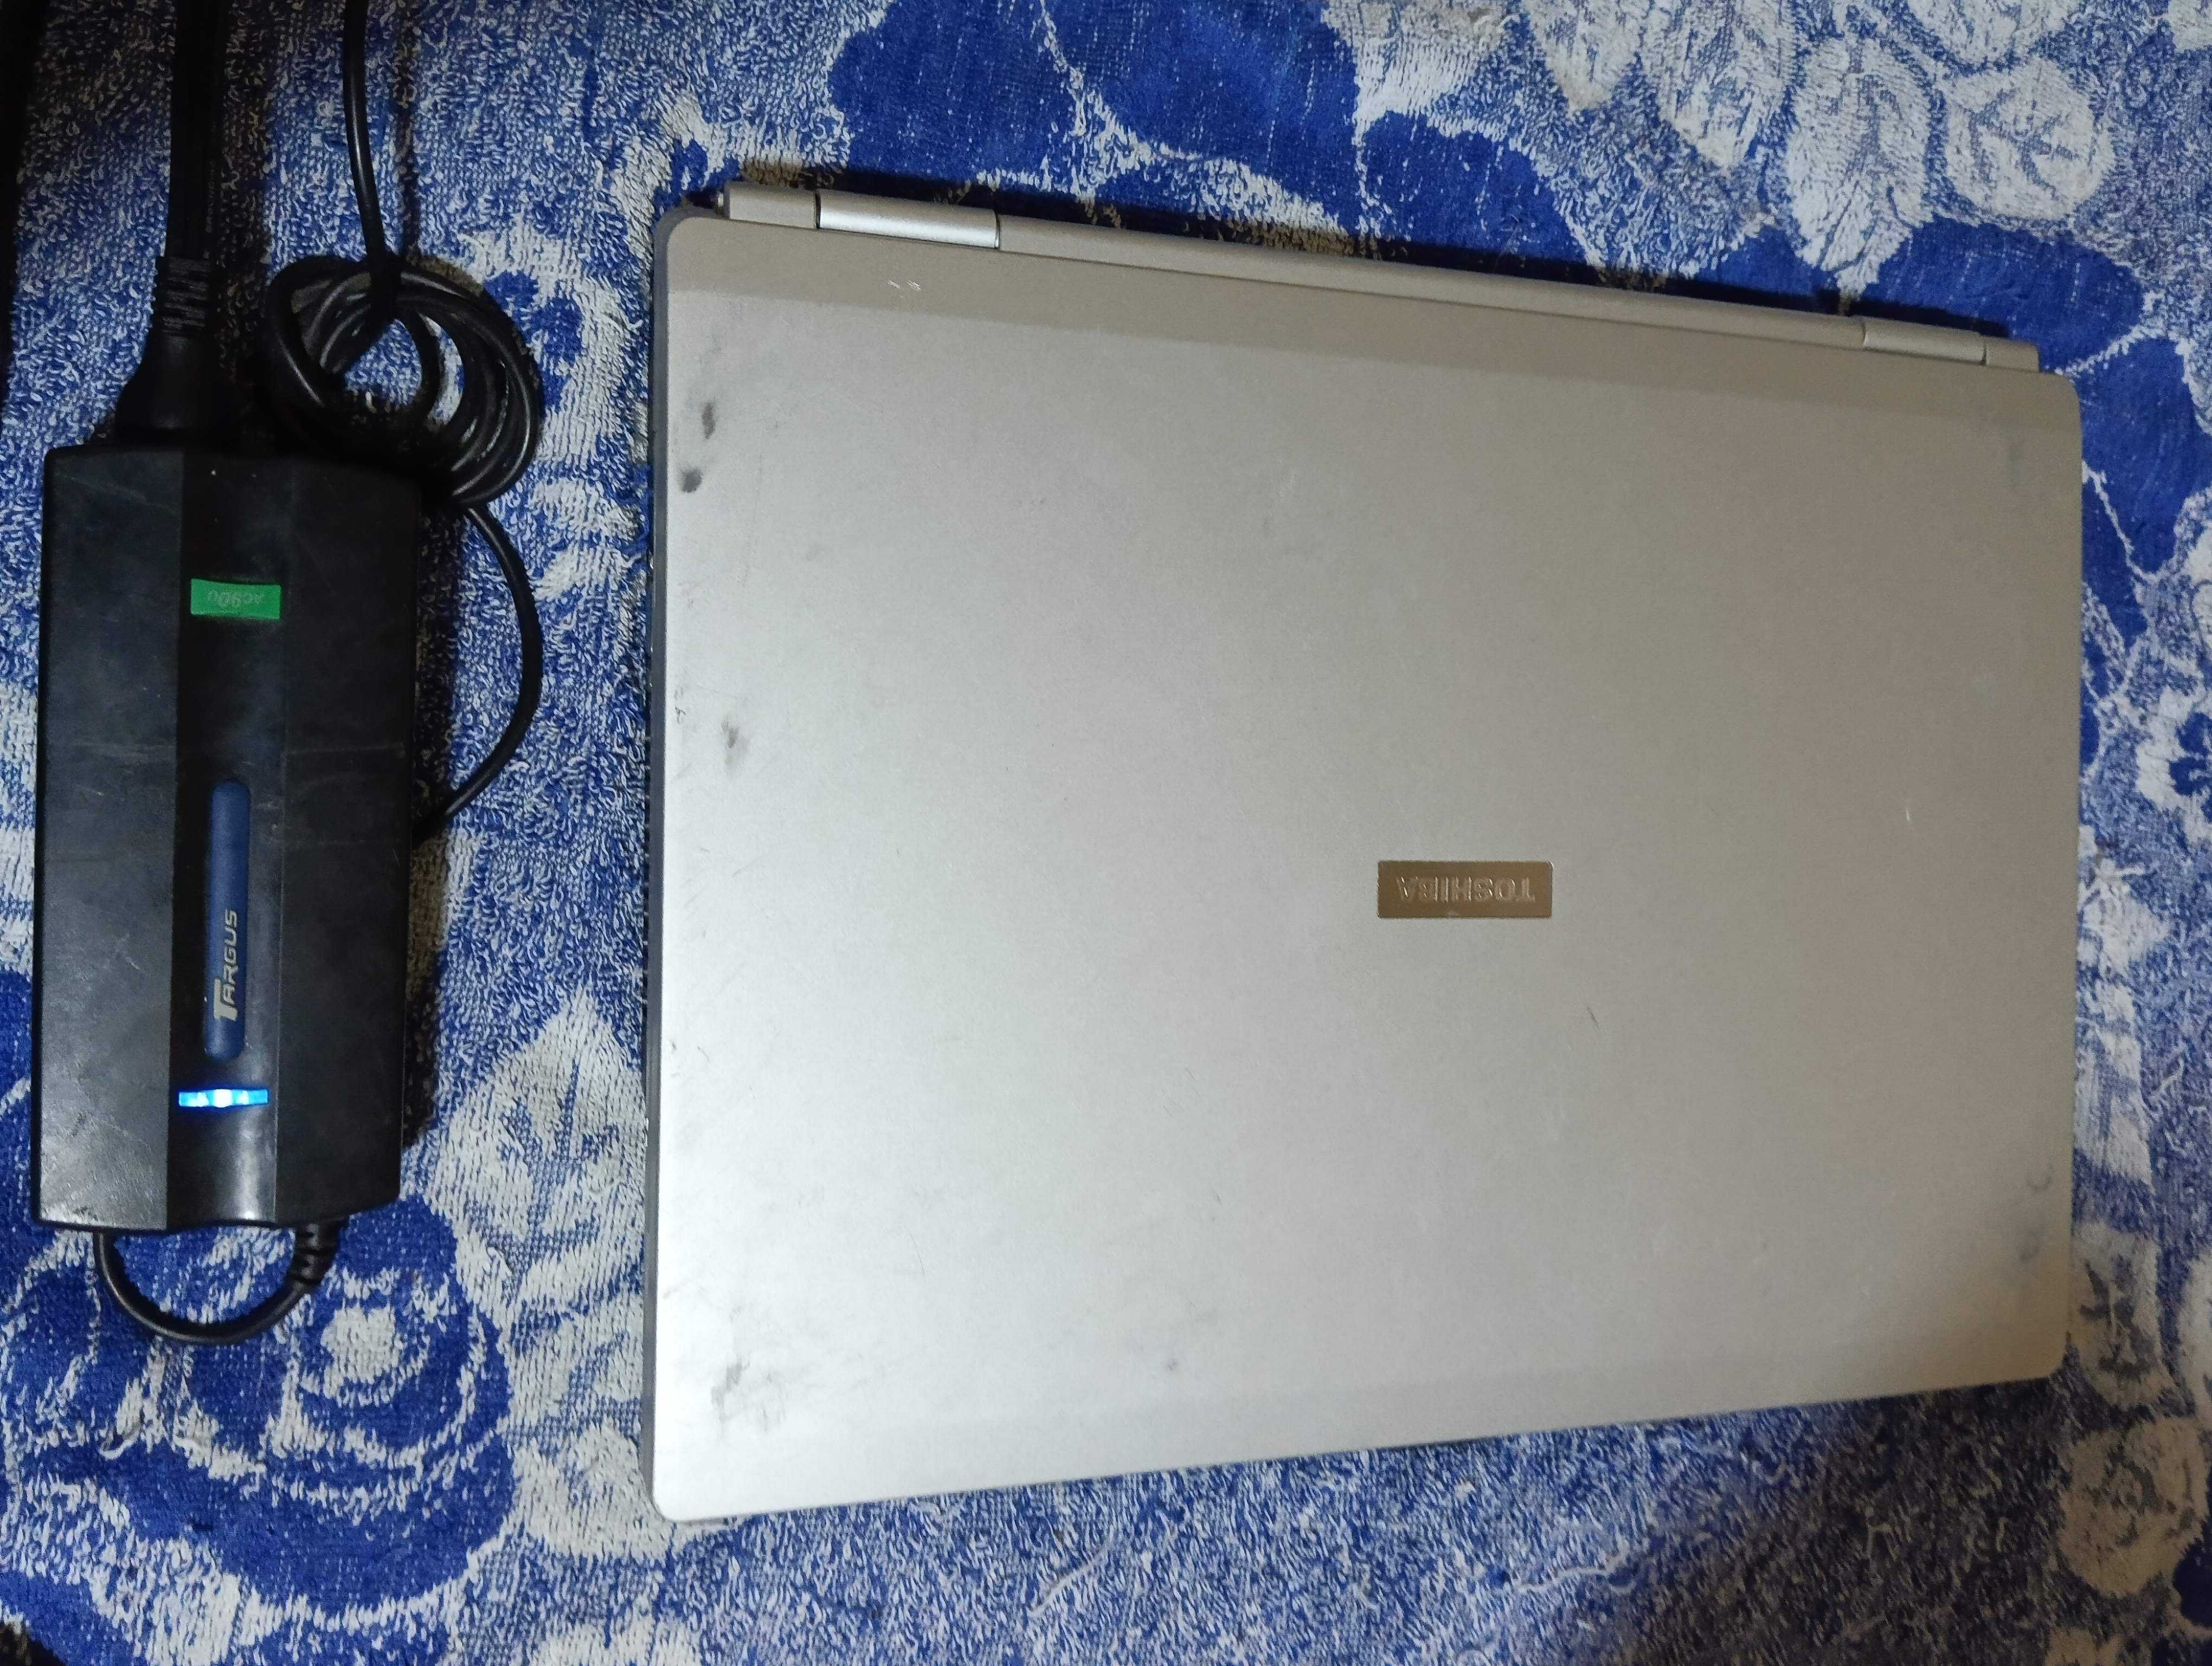 Продам ноутбук TOSHIBA SATELLITE M40-110